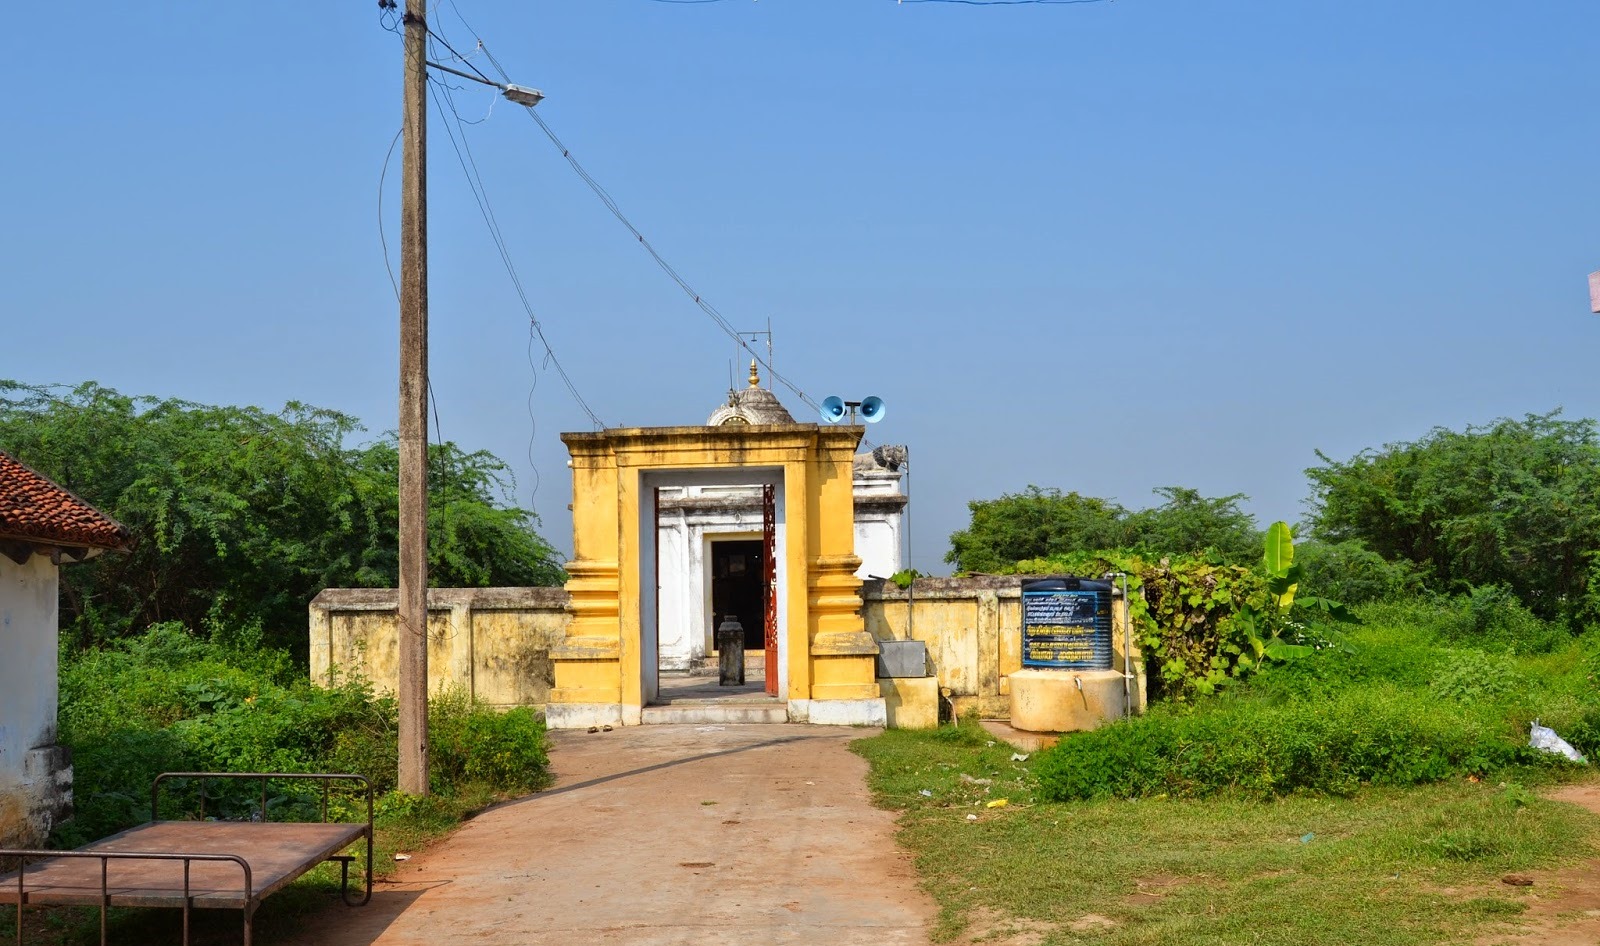 Kattumalaiyanur Sri Mahaveerar Jain Temple, Thiruvannamalai